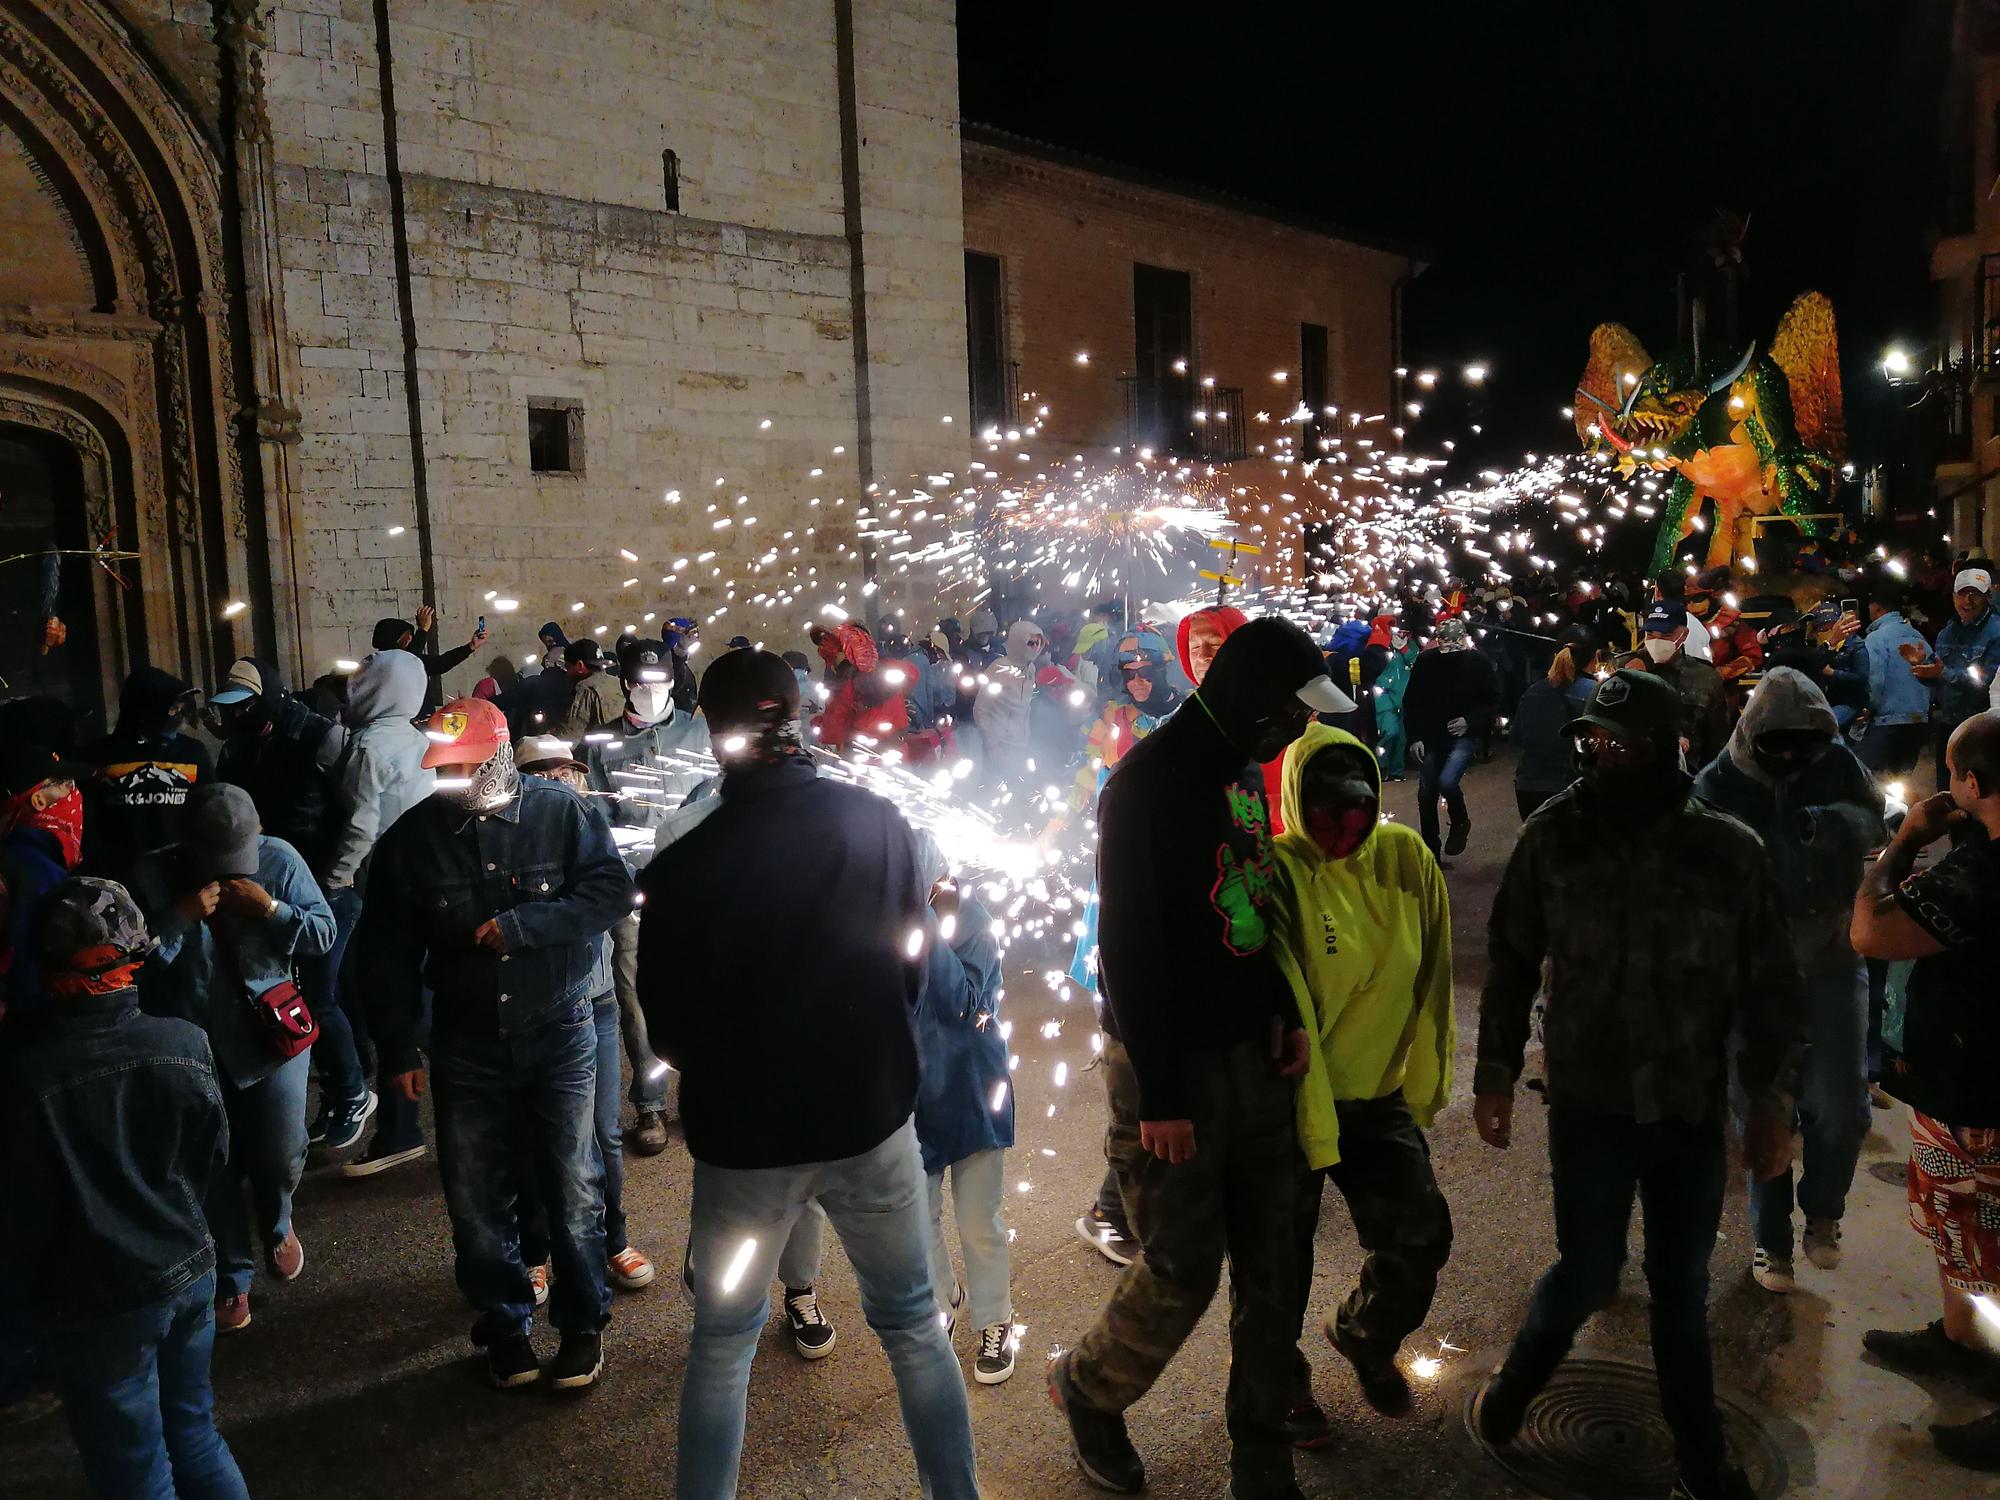 GALERÍA | El fuego prende la traca final de las fiestas en Toro